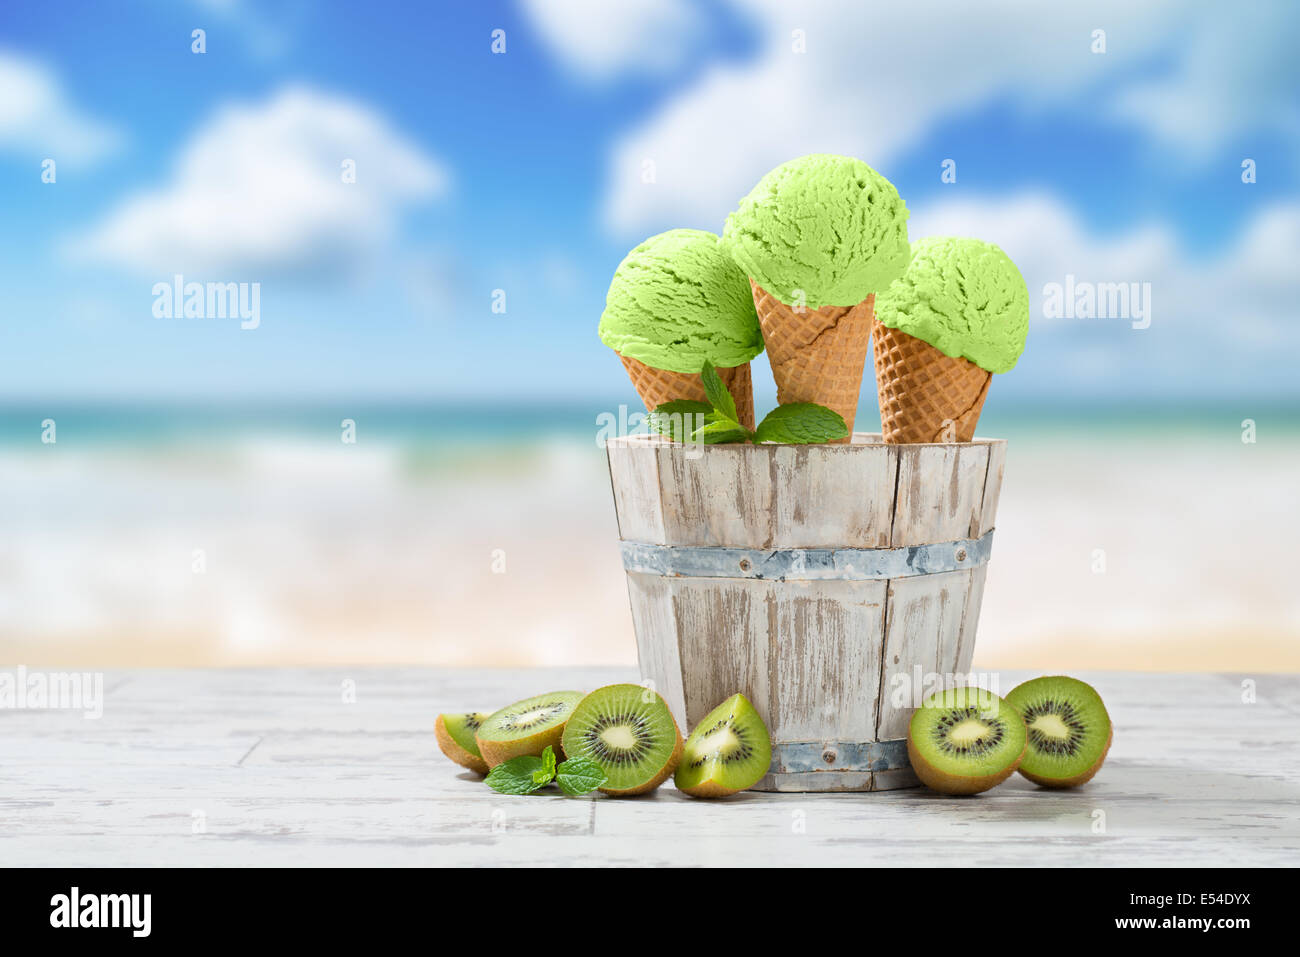 La crème glacée saveur kiwi sur lame de terrasse avec des fruits - plage soleil Banque D'Images